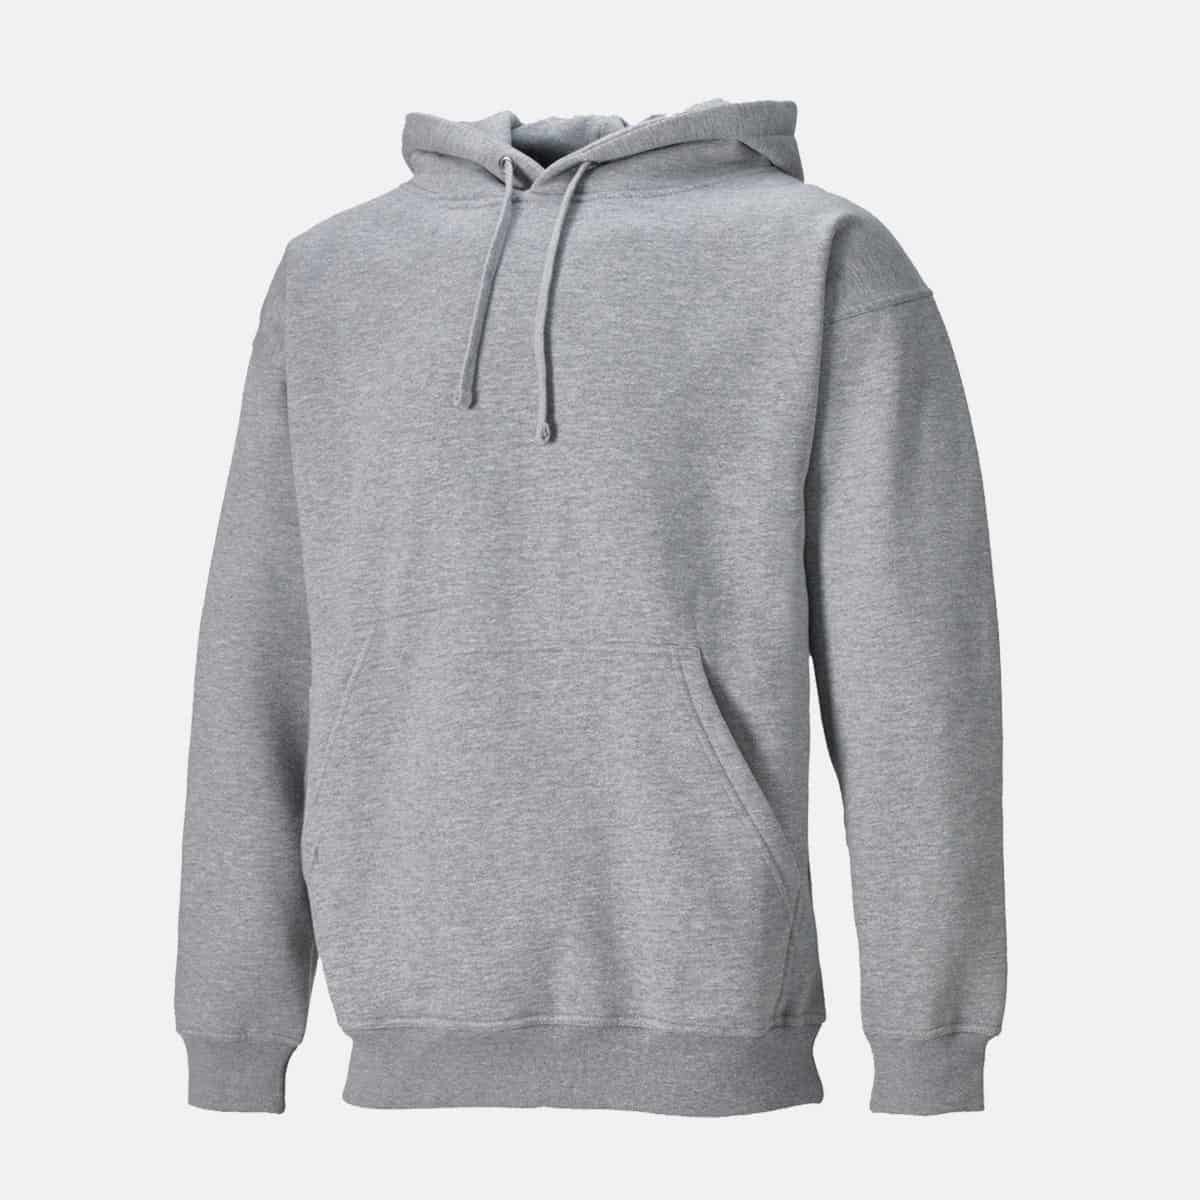 Bickies Plain Hoodie Sweatshirt For Men